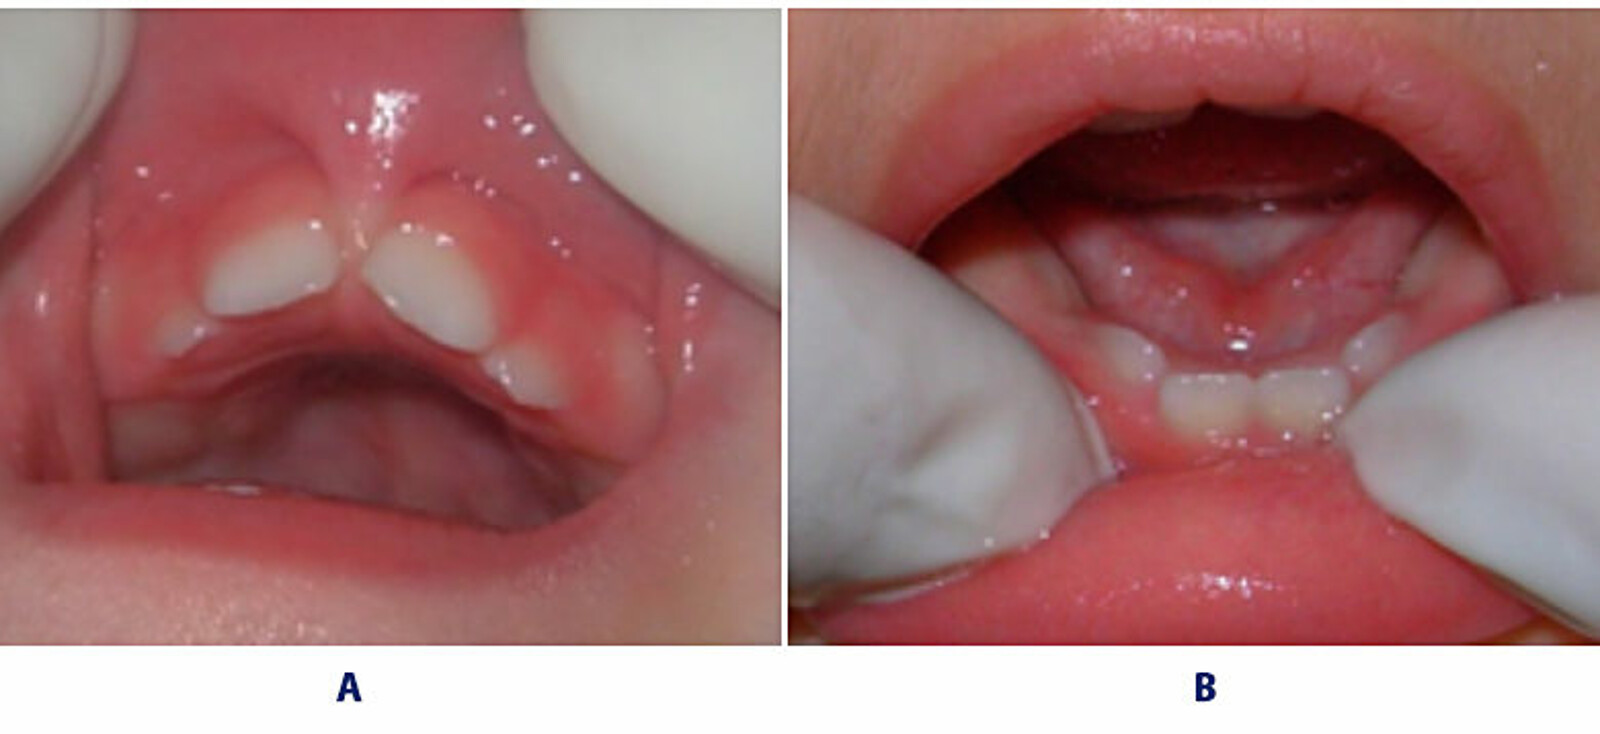 Figuras n Â° 3a y 3b. ConstricciÃ³n maxilar (forma triangular) que condiciona el apiÃ±amiento dentario.